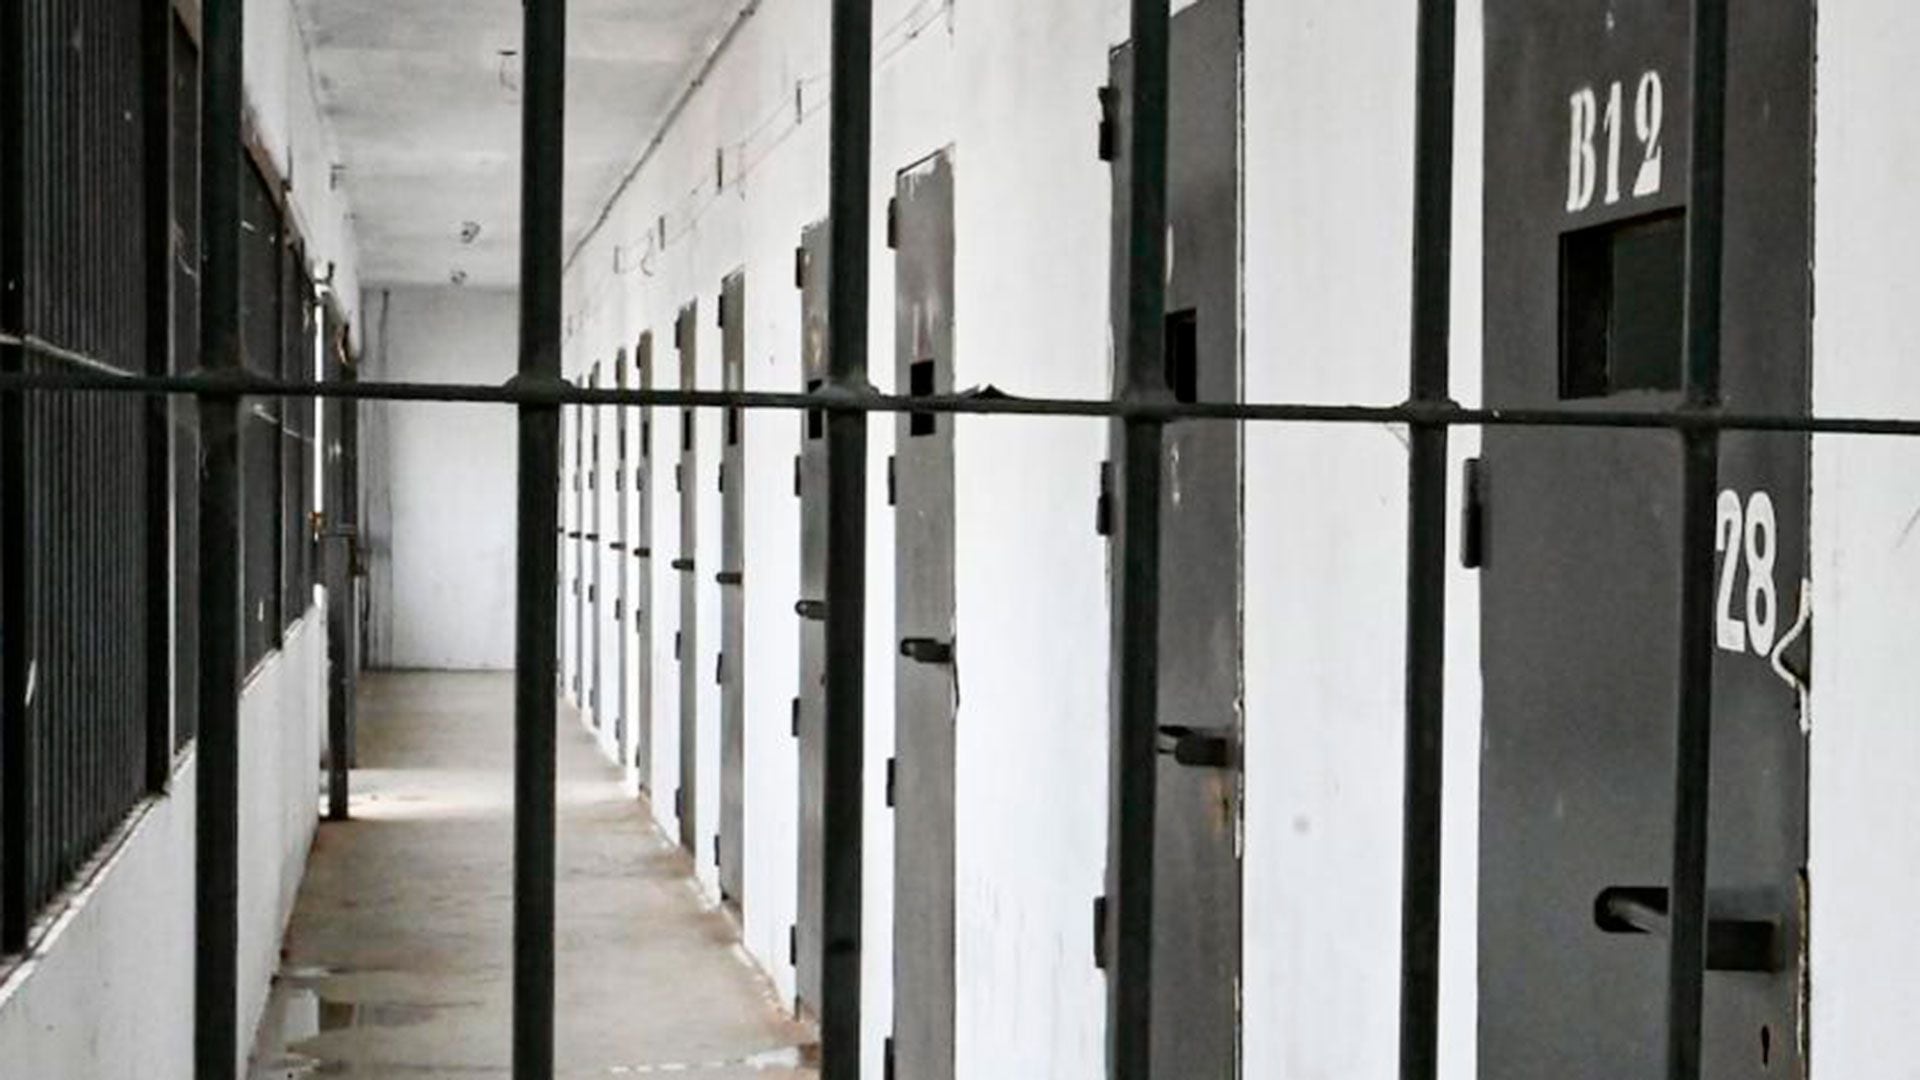 Hubo 53 procesados por delitos vinculados a drogas que tuvieron el beneficio de la prisión domiciliaria en este año (Archivo cárcel Uruguay. Crédito: Fiscalía)